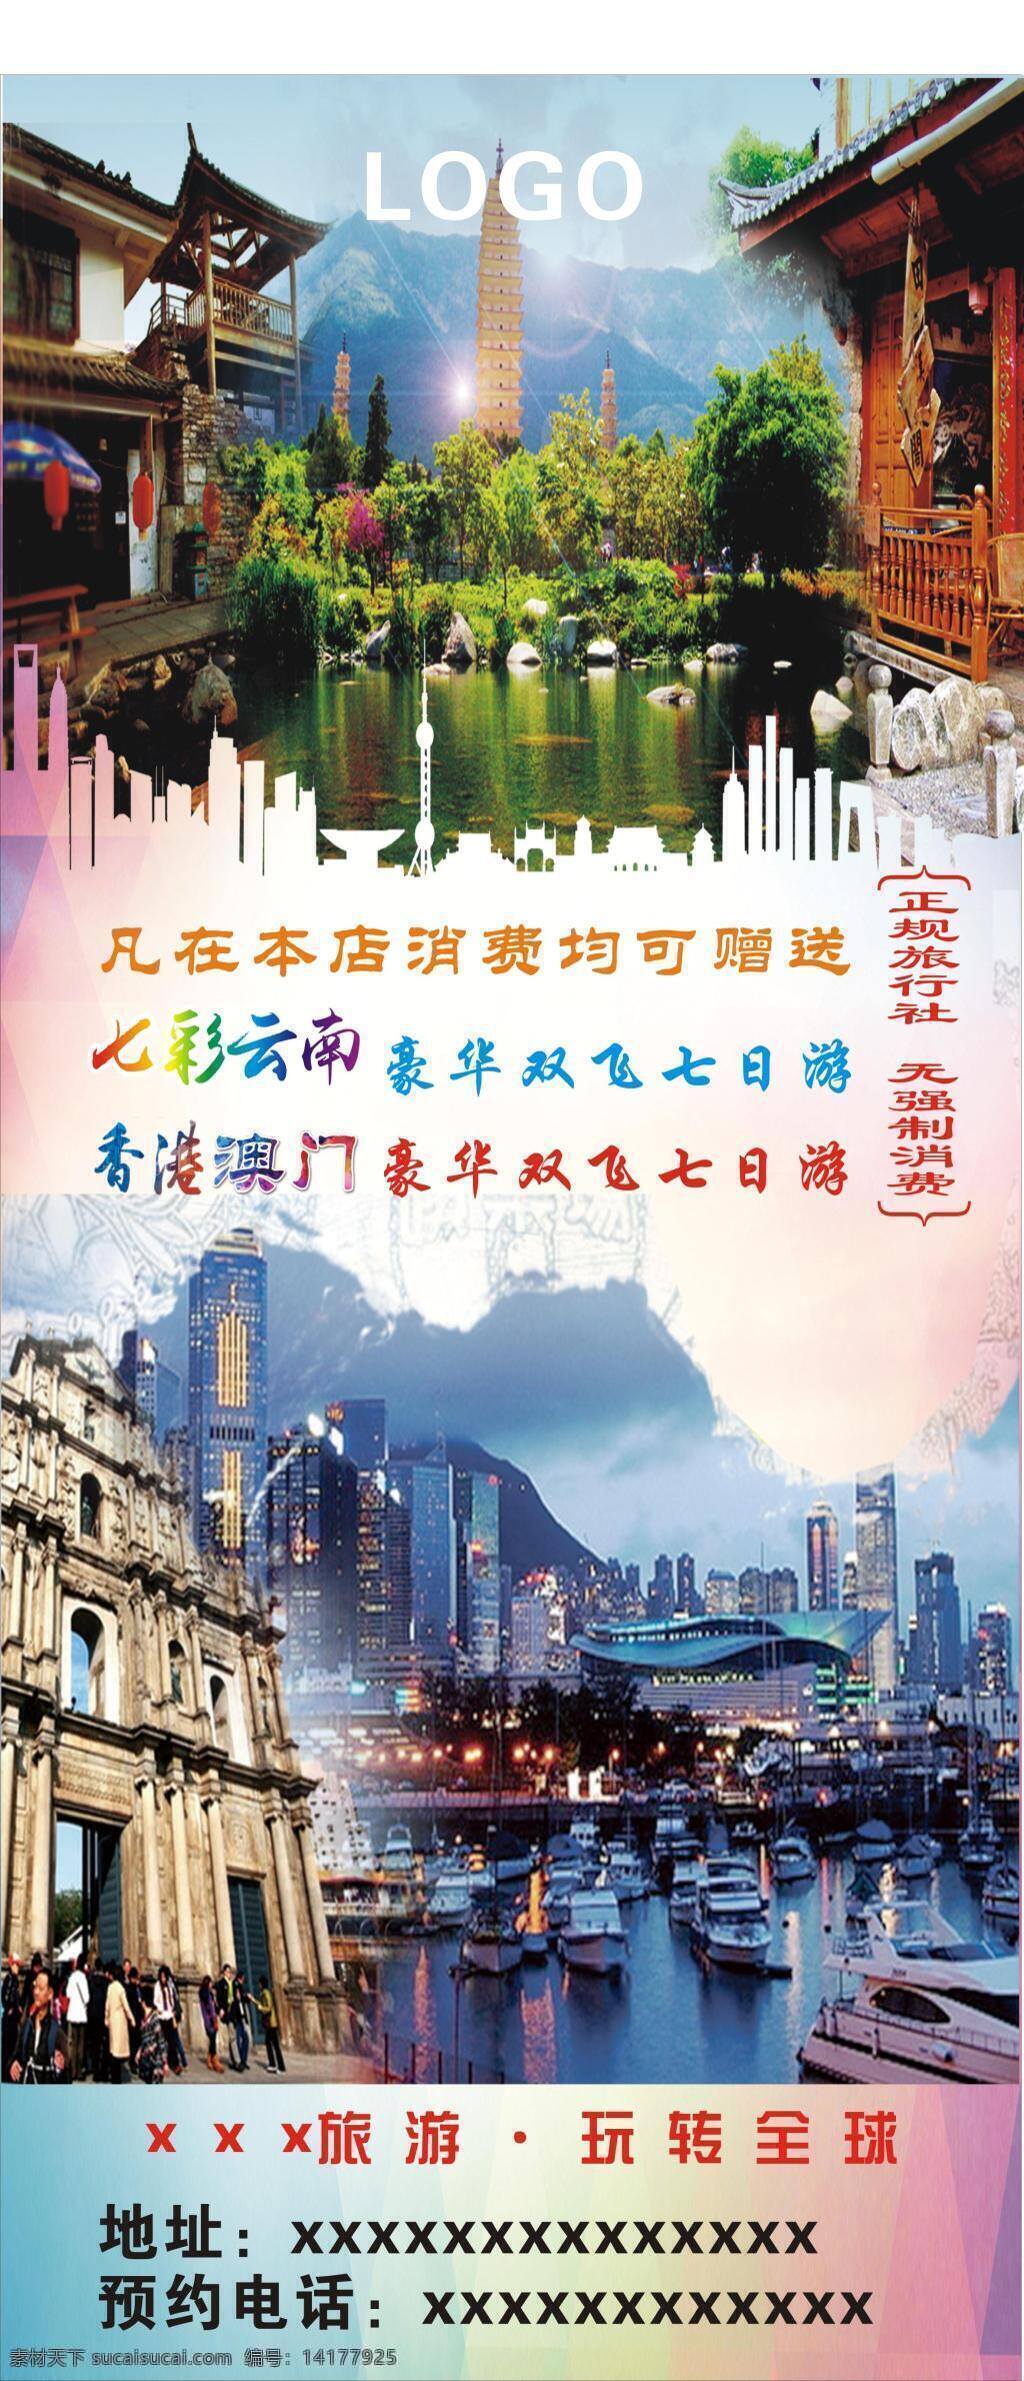 旅游 展架 旅游展架 展板 云南 港澳 旅游宣传 海报 风景